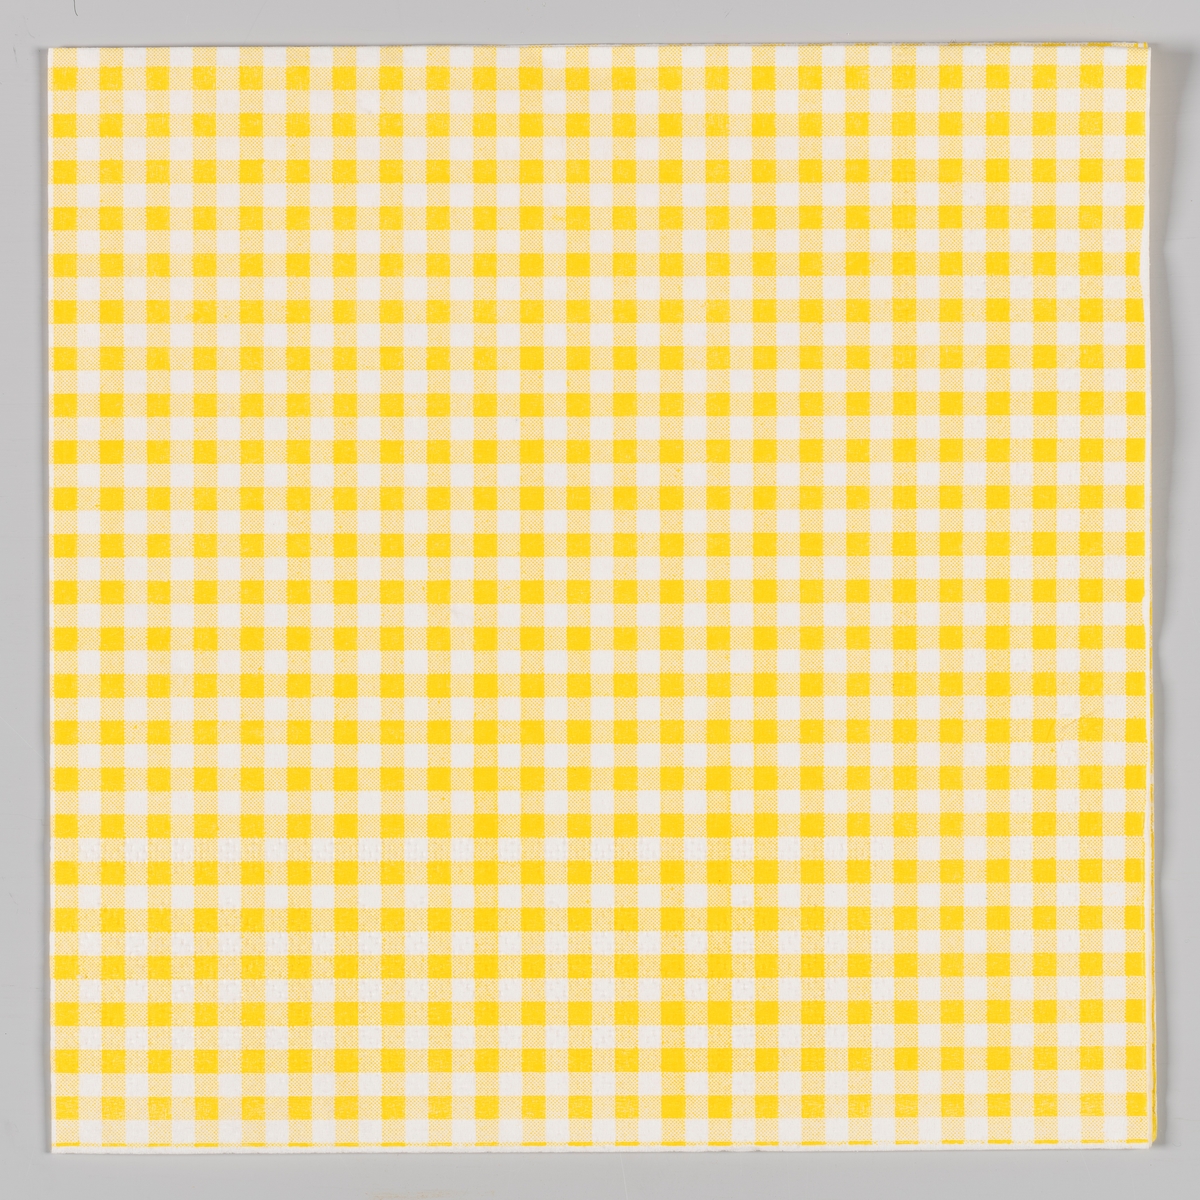 En gul og hvit rutete serviett.